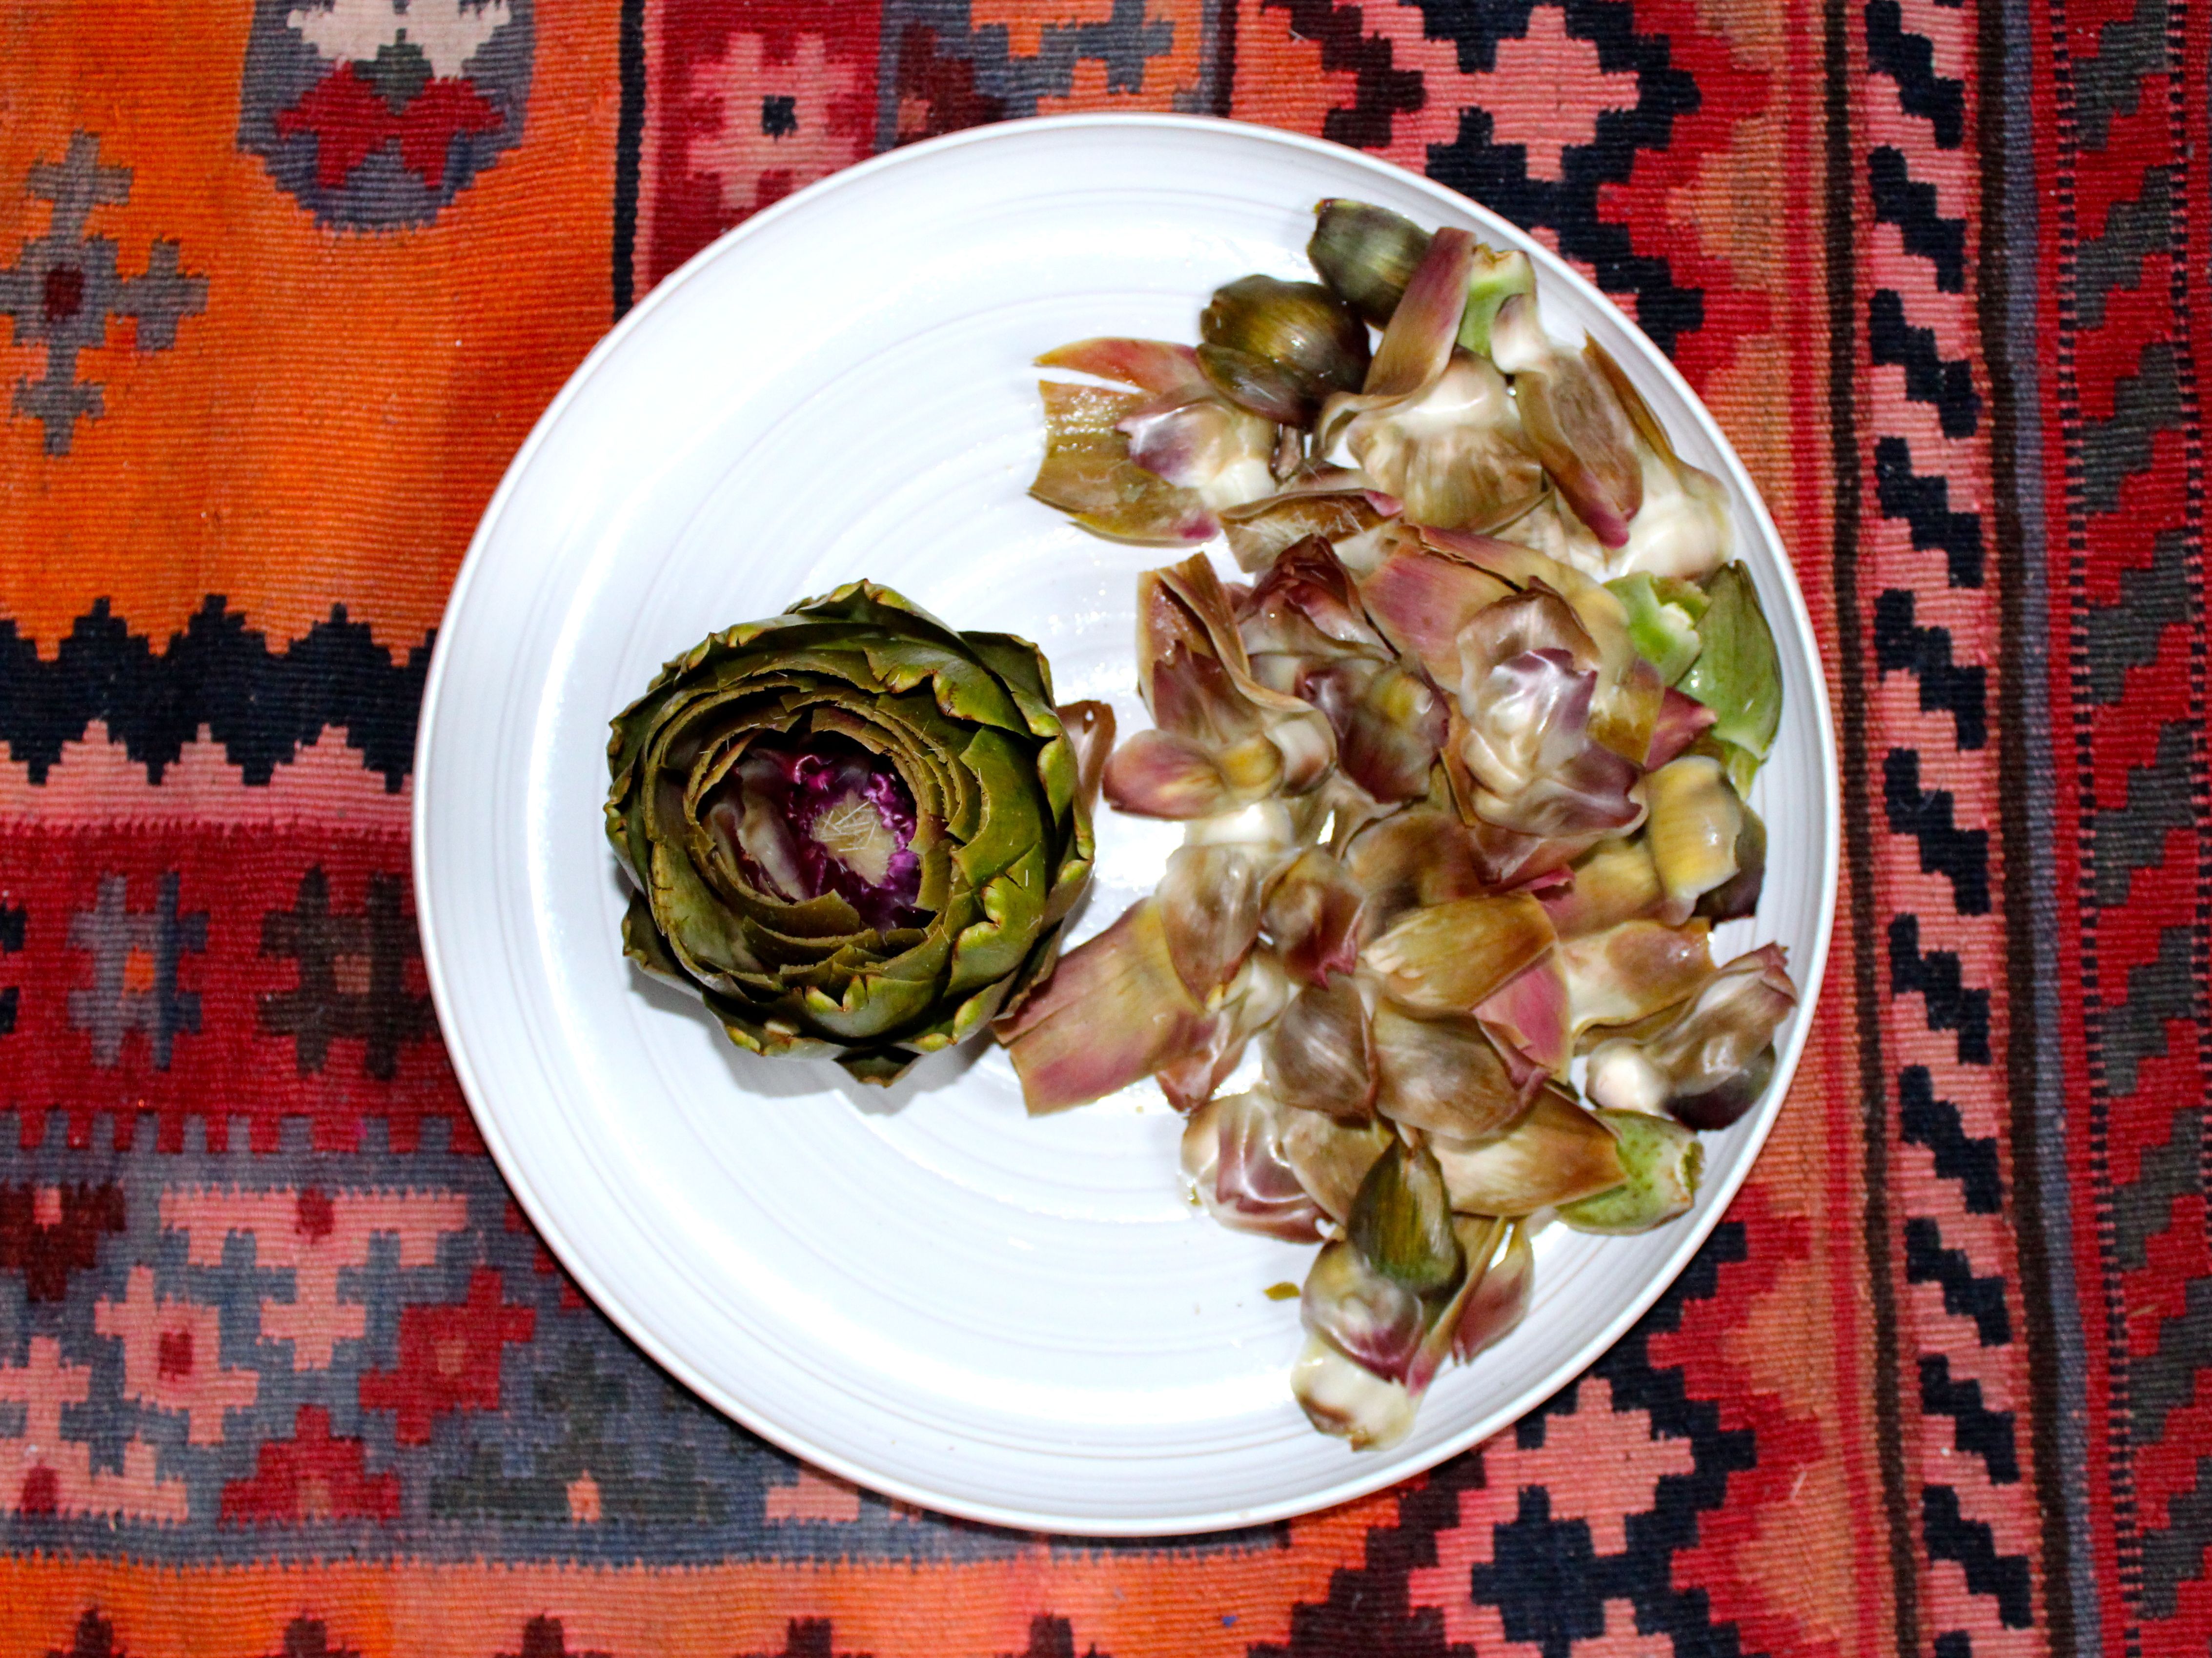 artichoke, inner leaves on plate